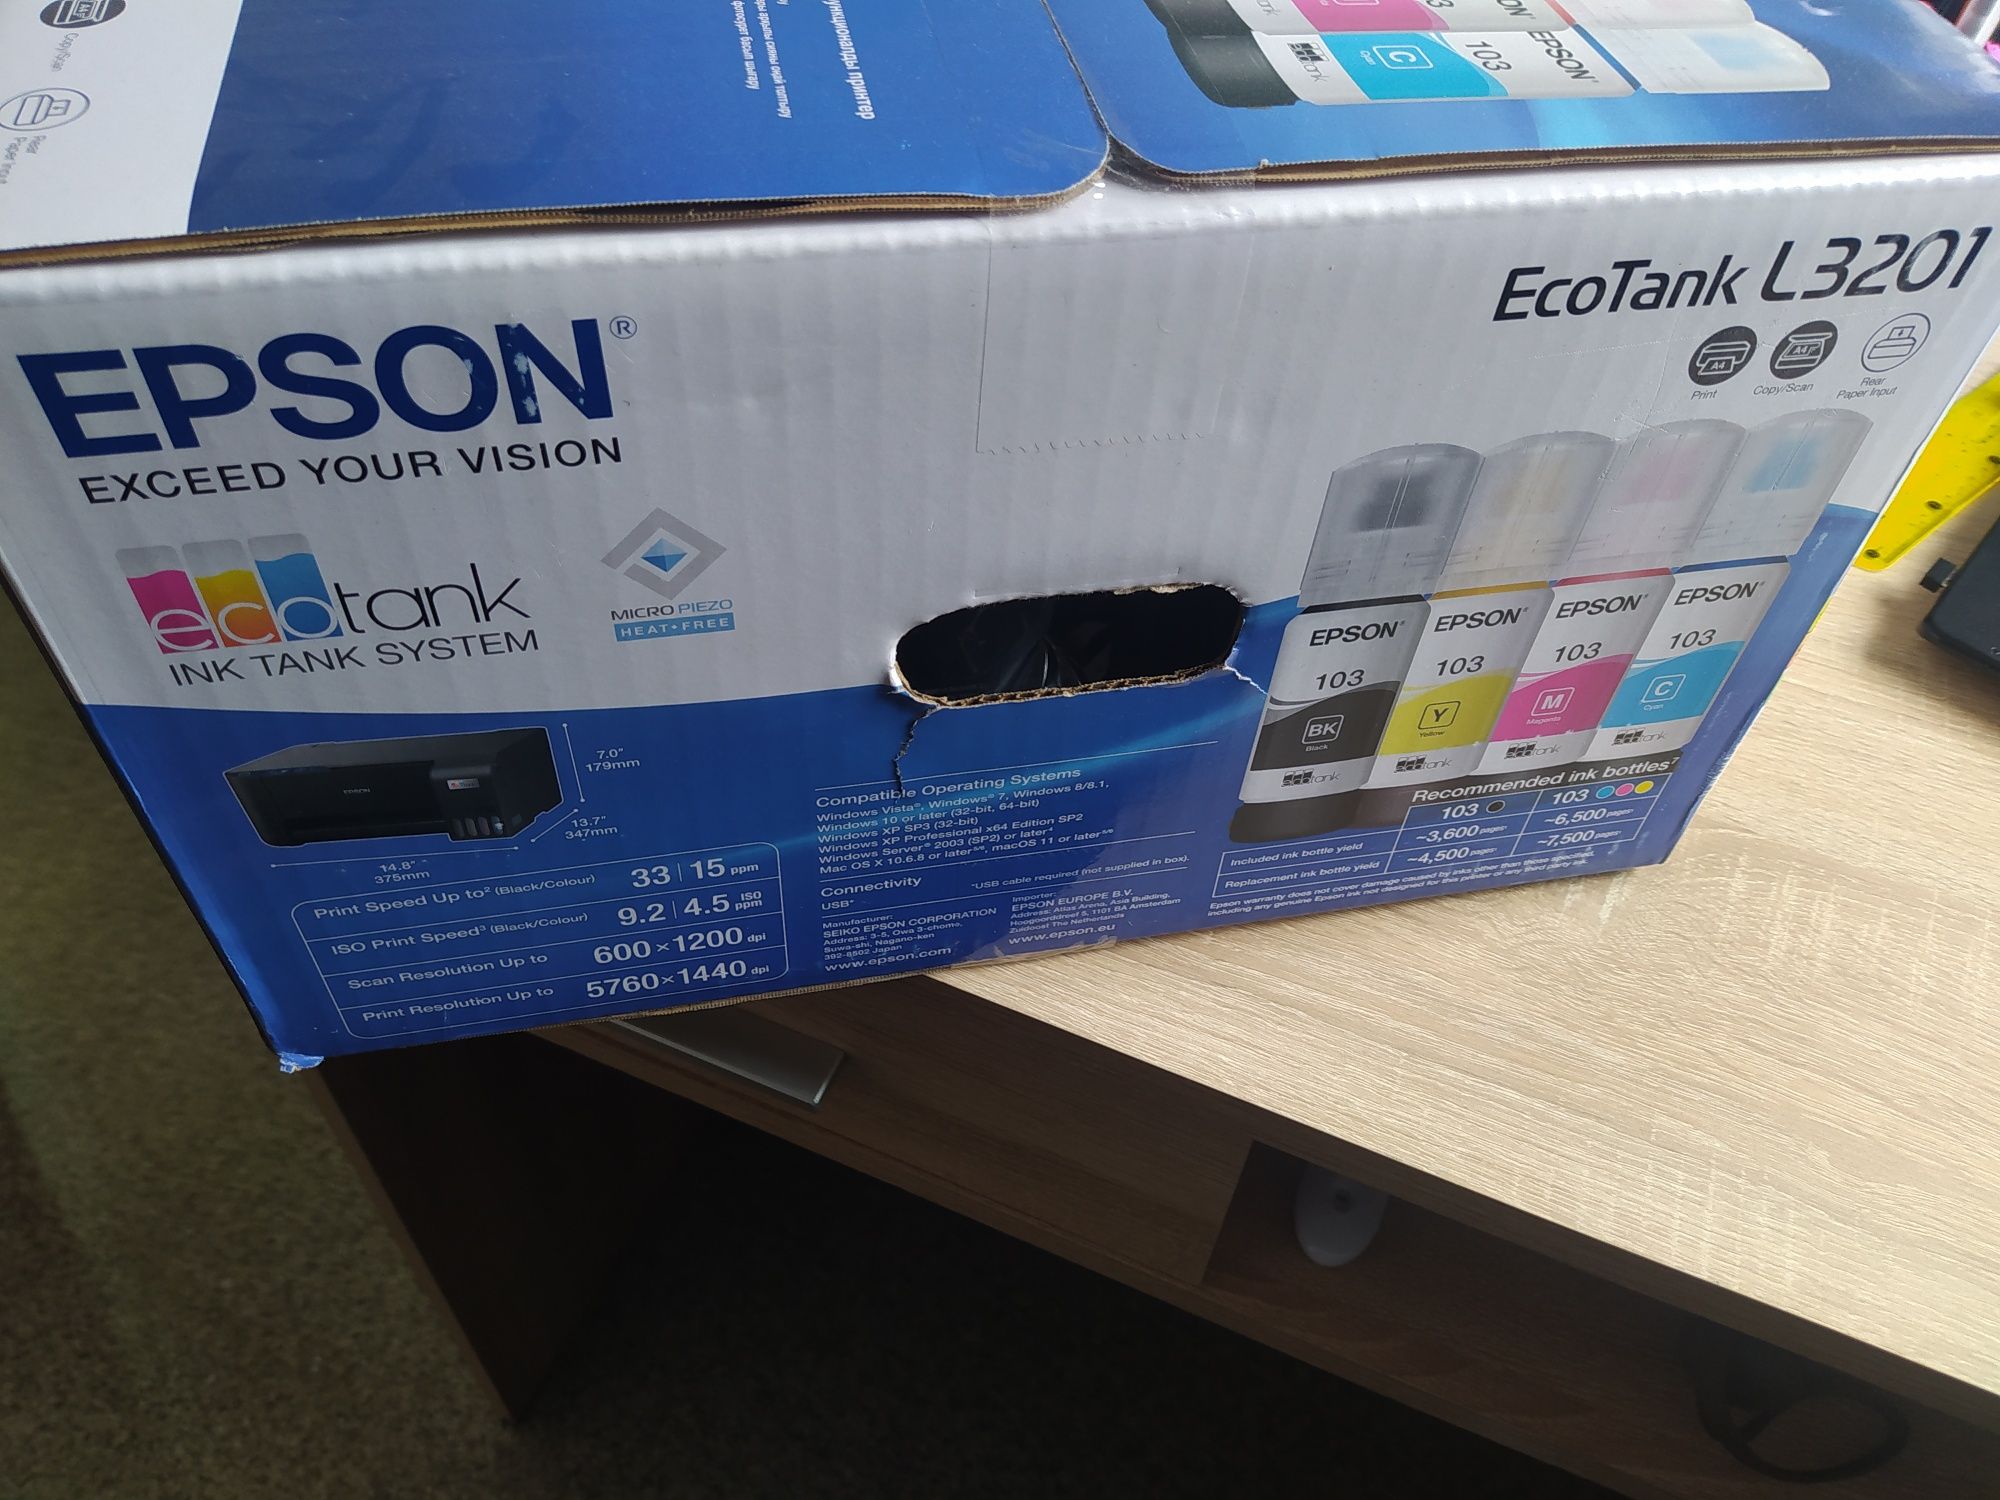 Продам або обміняю МФУ Epson L3201 на МФУ з Wi-Fi модулем